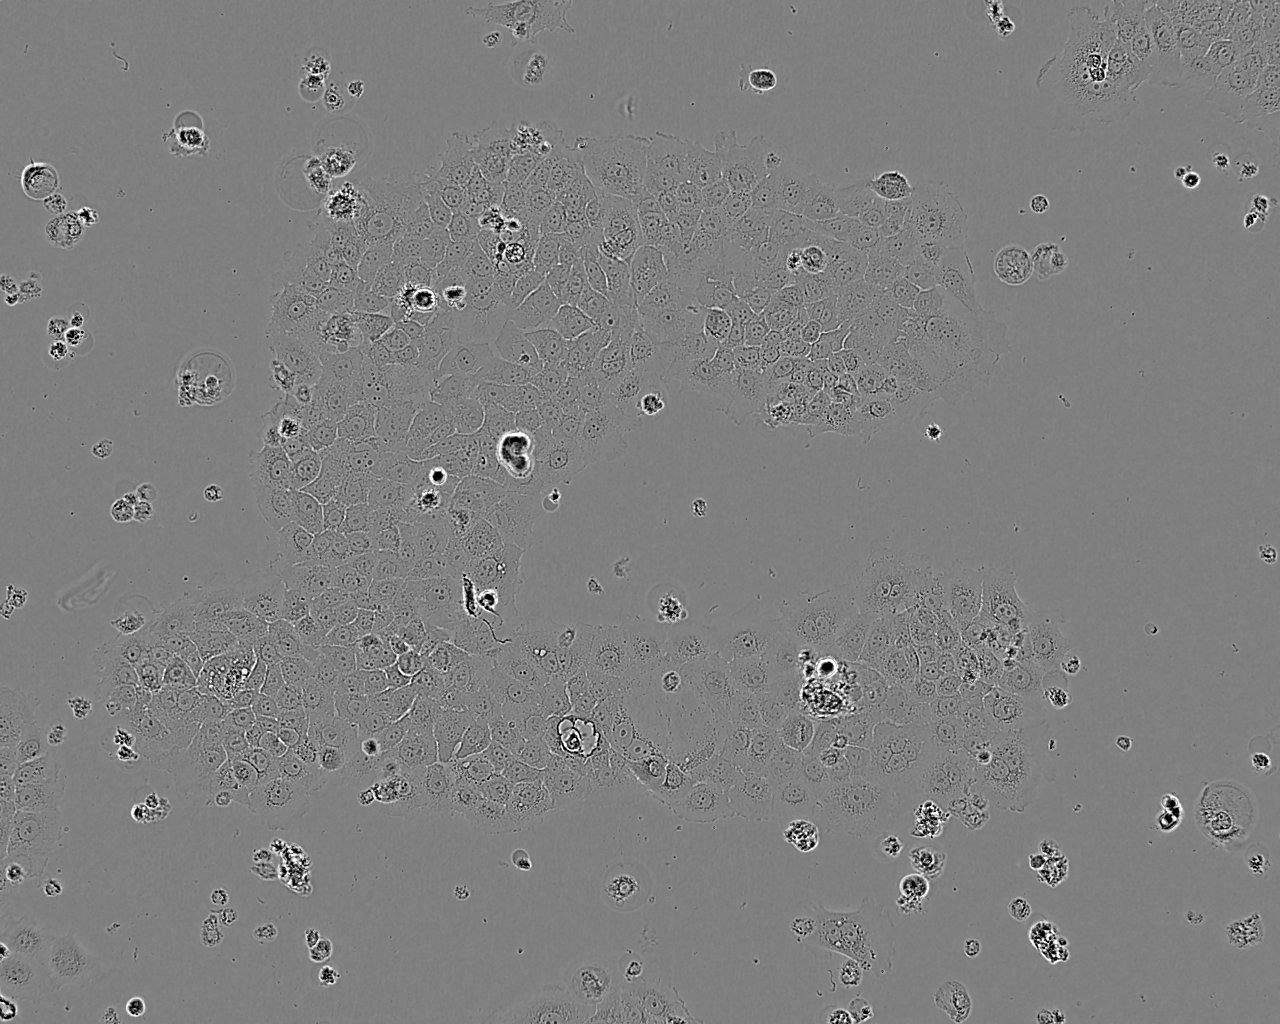 NCI-H1930 Cells|人小细胞肺癌细胞系